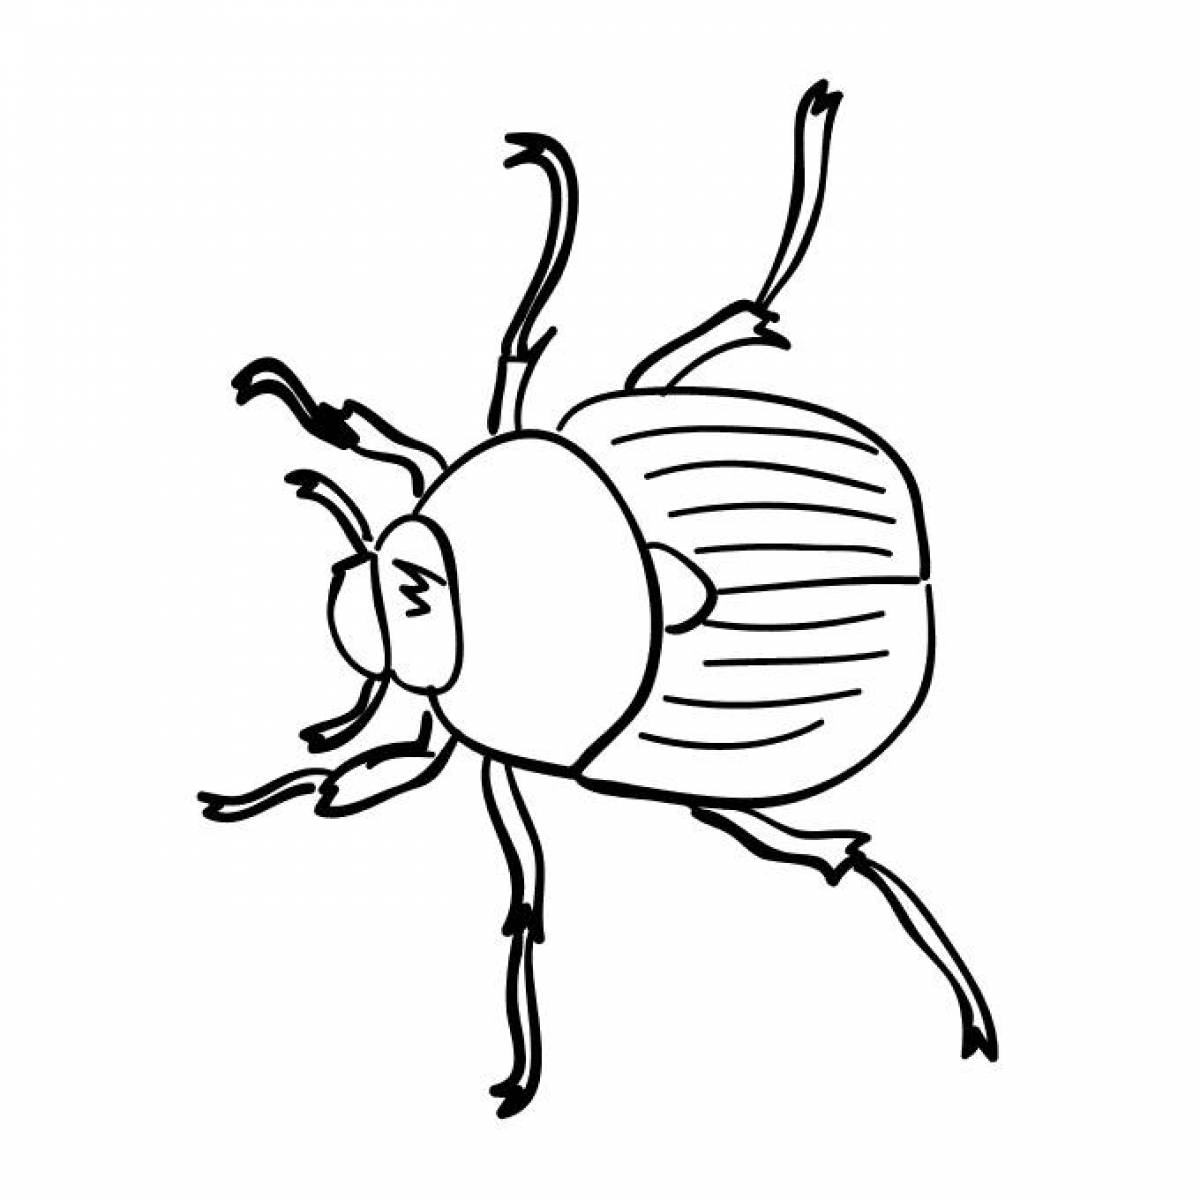 King beetle